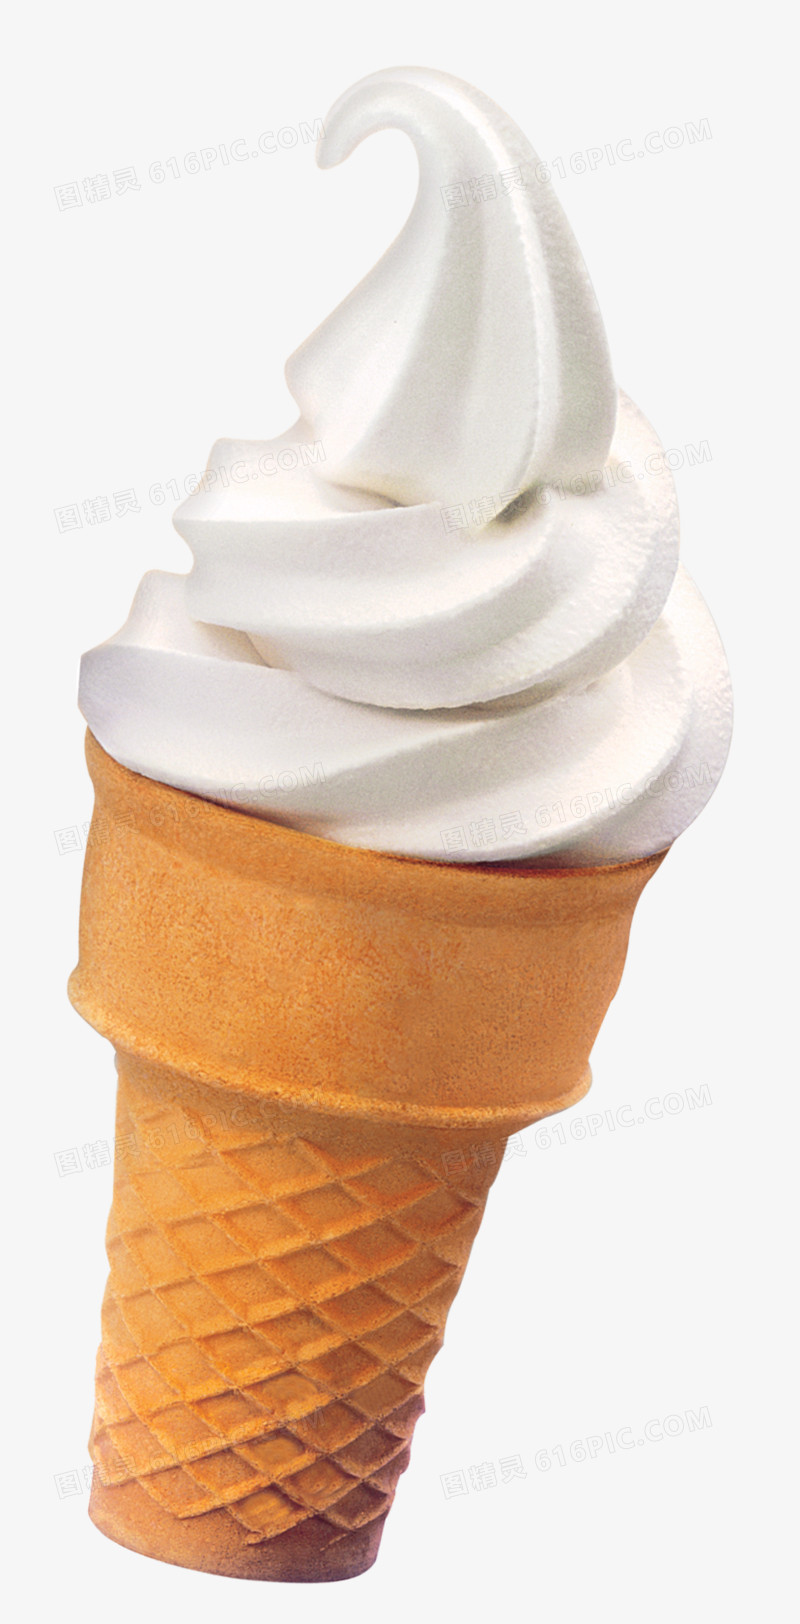 食物图片冰淇淋图片素材 冰淇淋甜筒